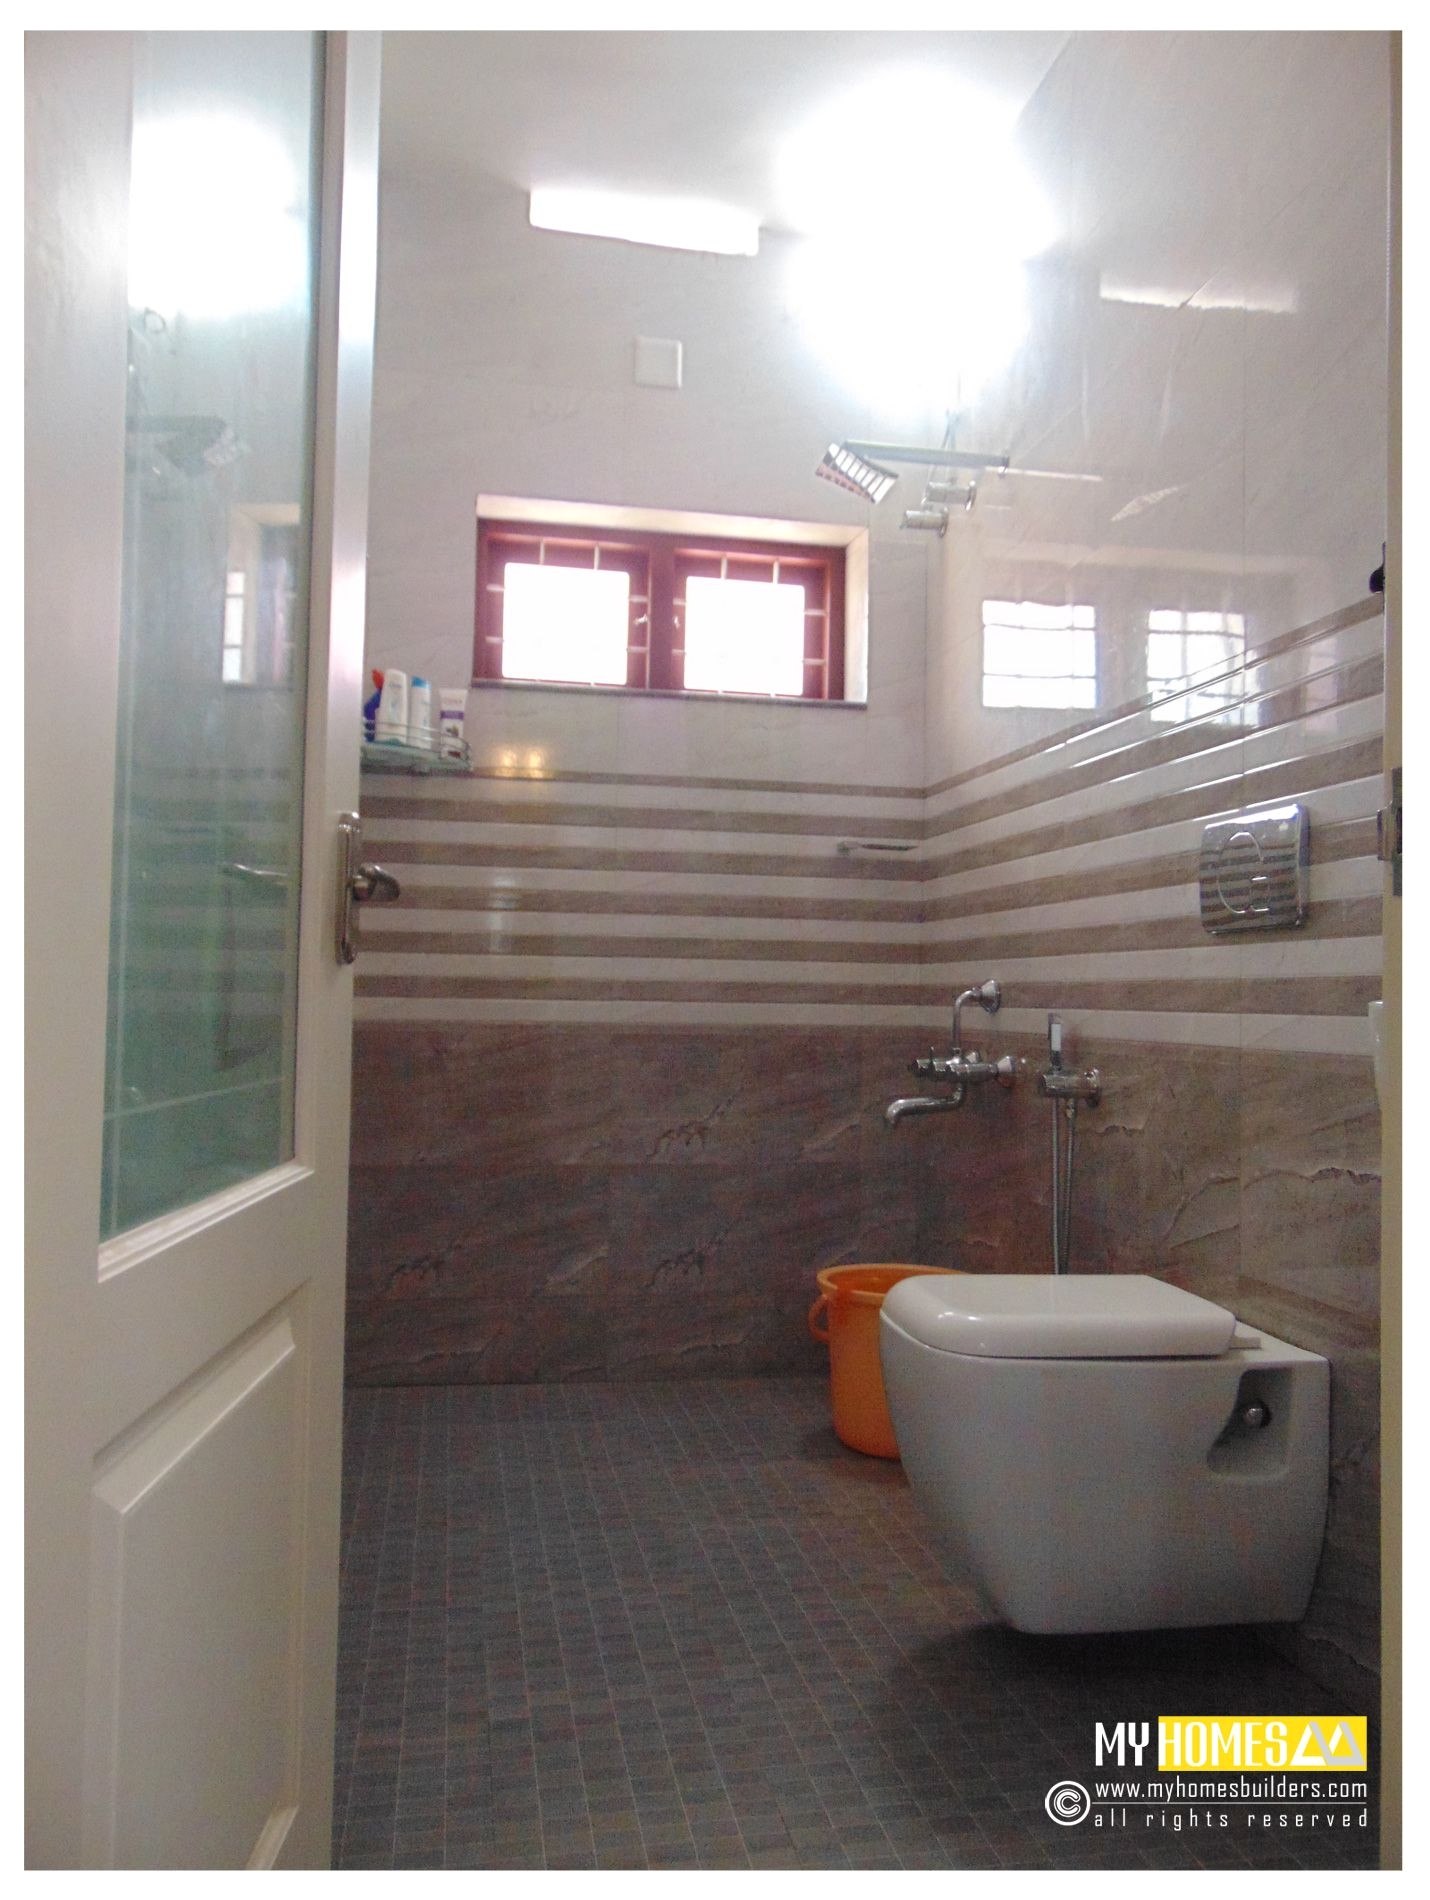 wide bathtub inspirational kerala homes bathroom designs top bathroom interior designs in